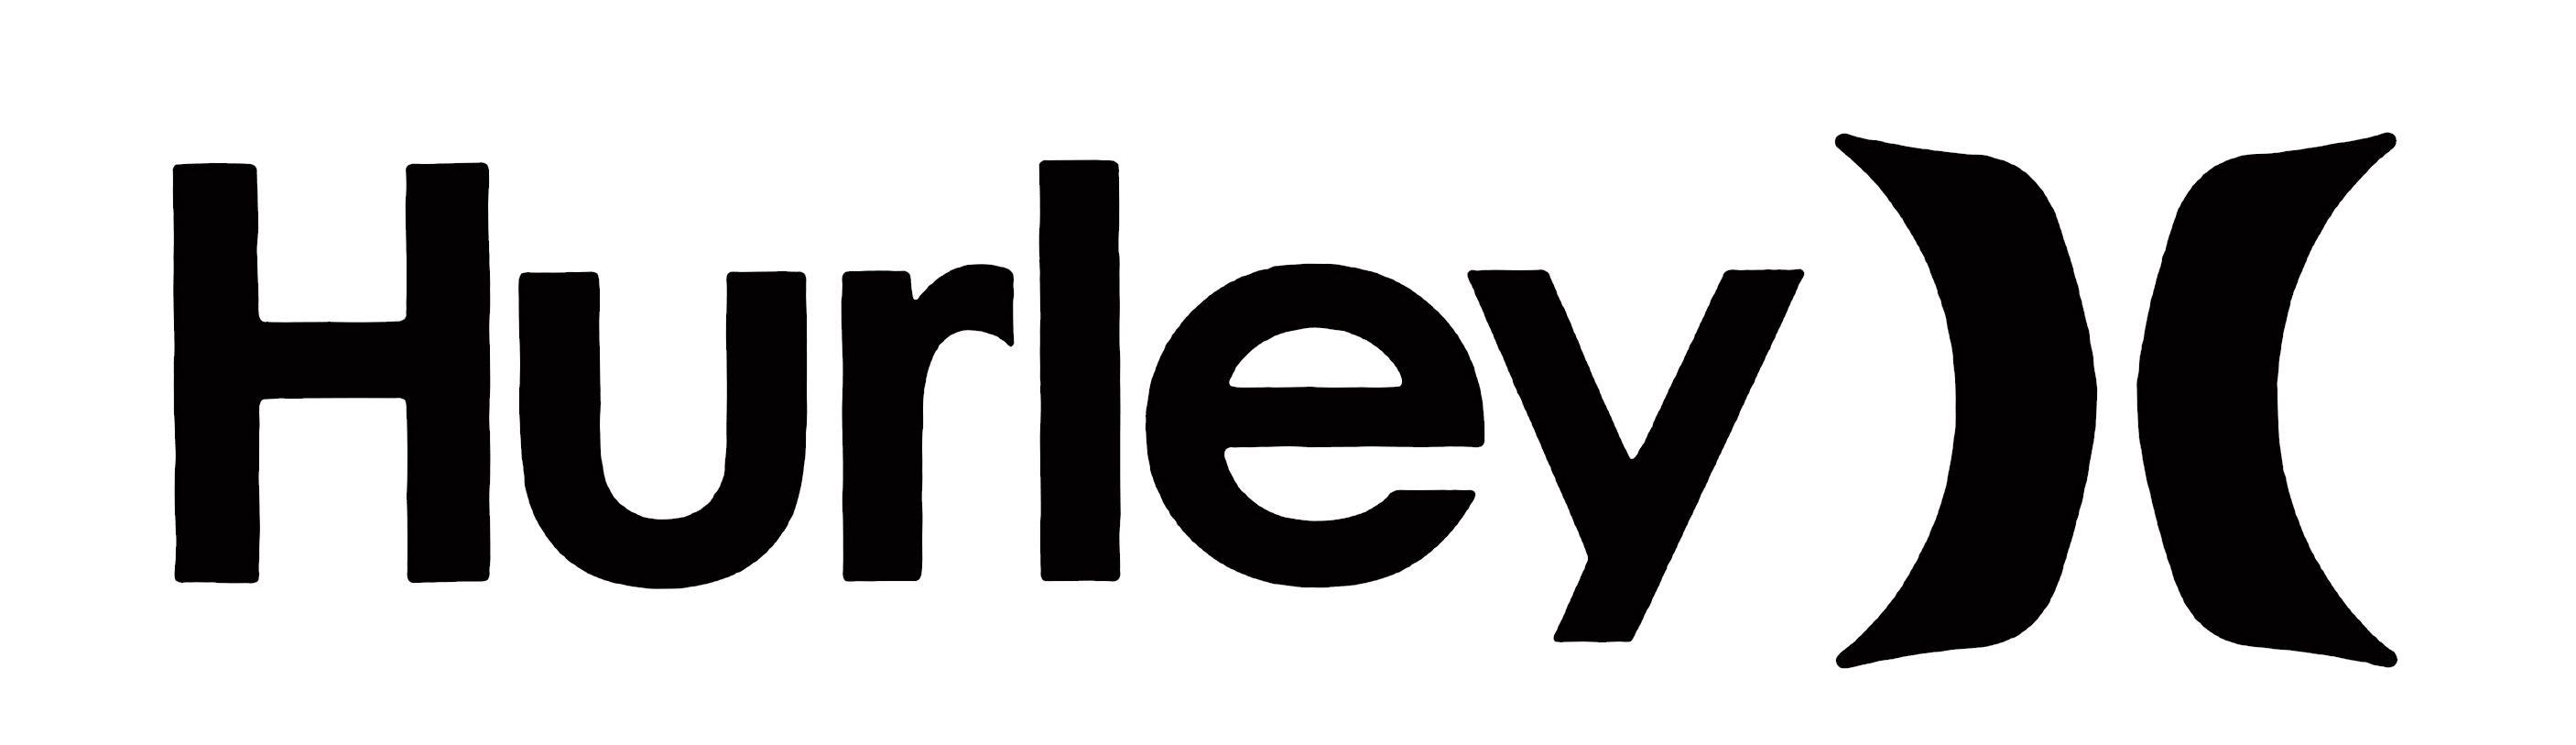 Hurley Logo - logos. Logos, Hurley logo, Hurley